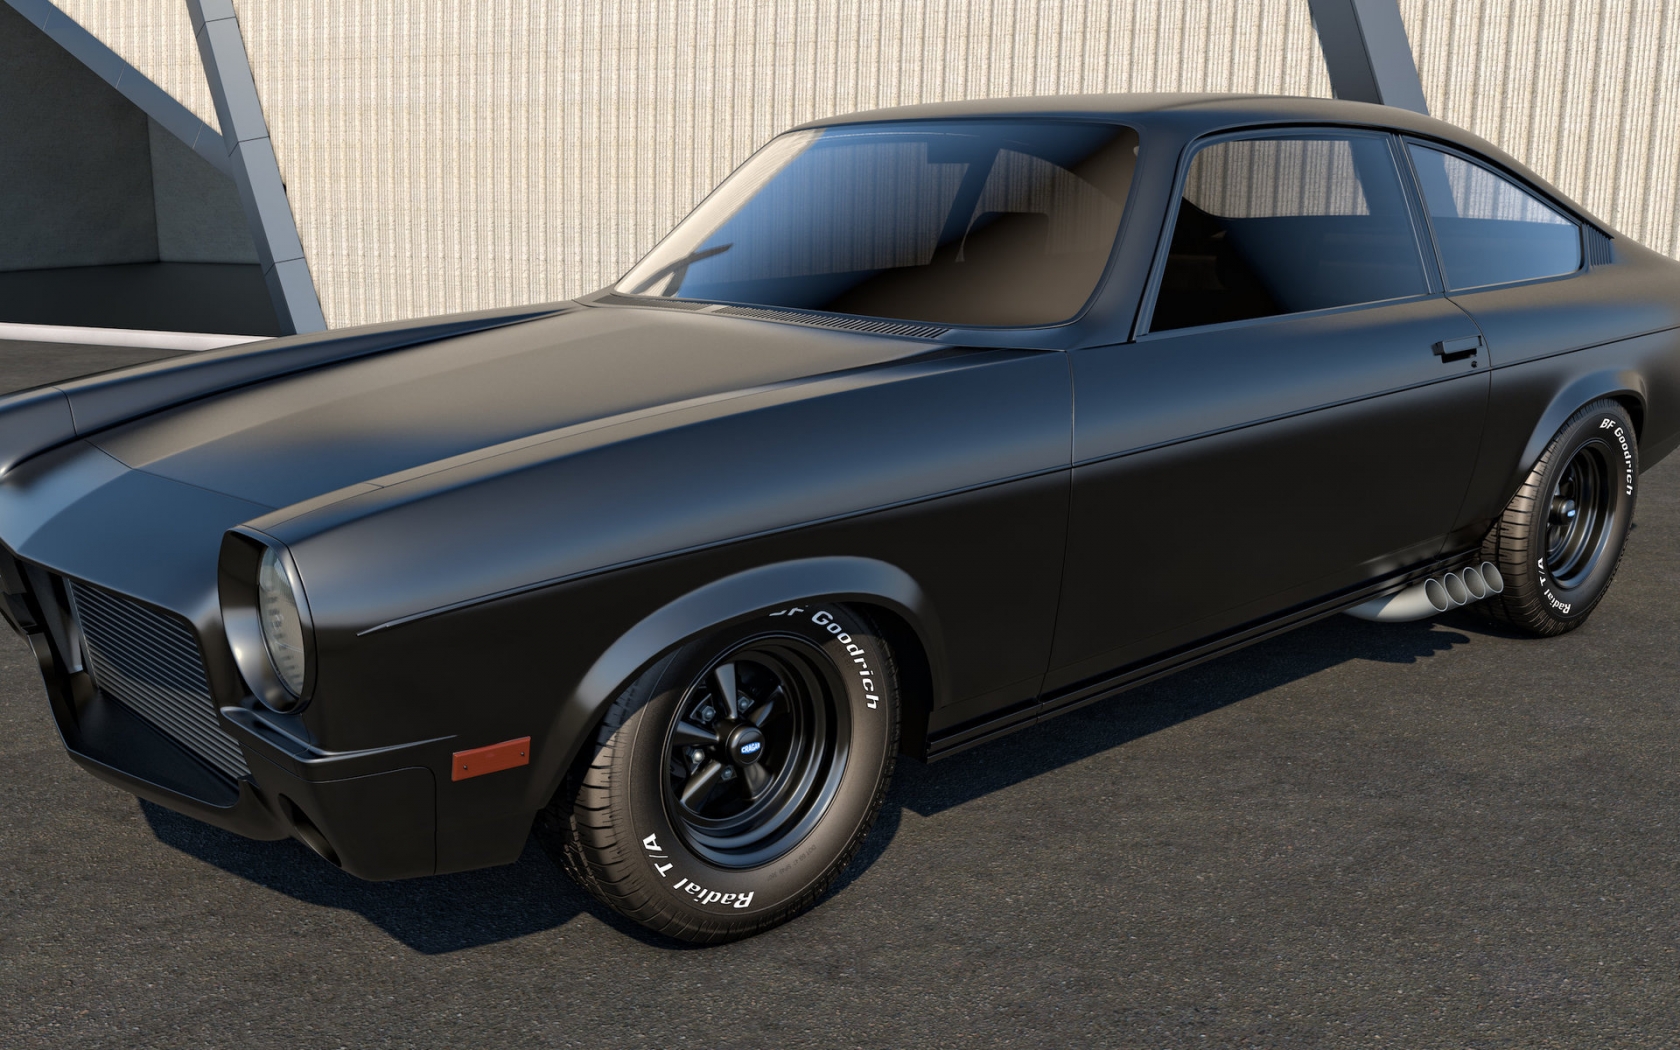 Black Chevrolet Vega for 1680 x 1050 widescreen resolution